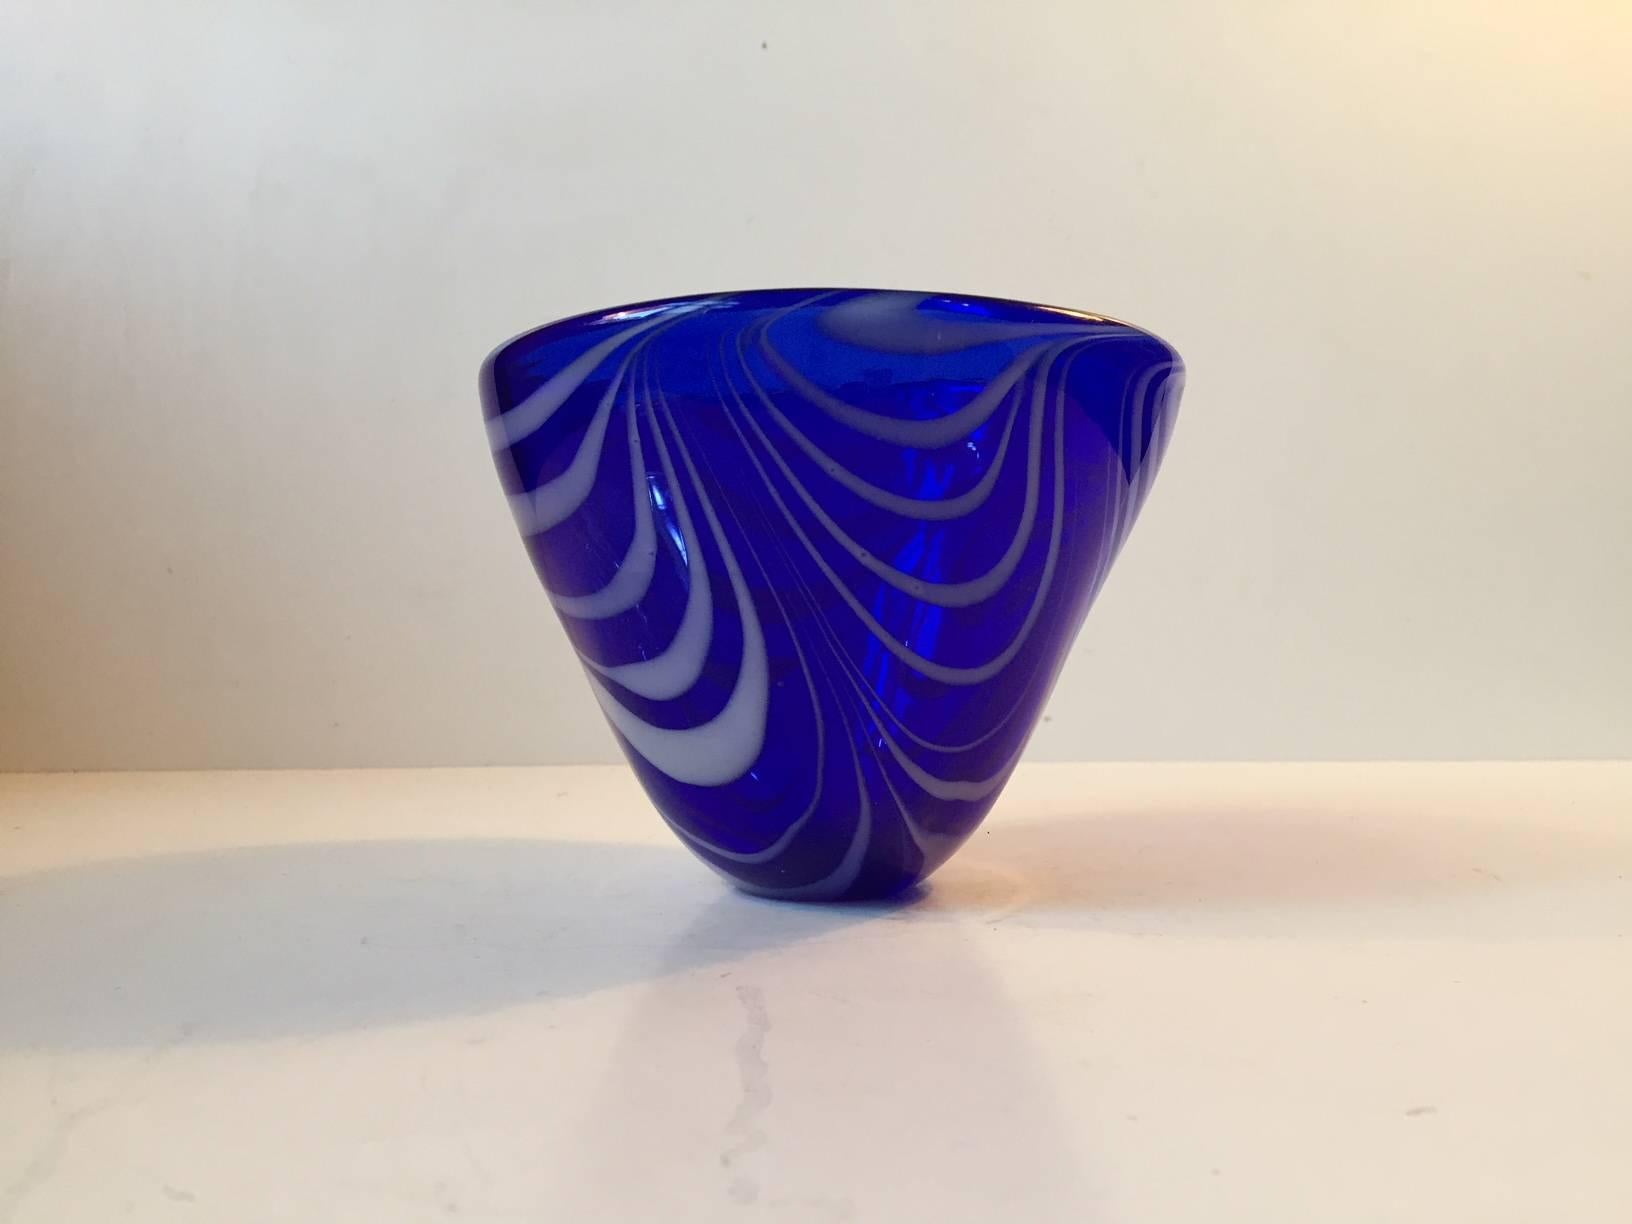 Art Glass Vintage Modernist Blue Spiral Bowl by Torben Jorgensen for Holmegaard, 1980s